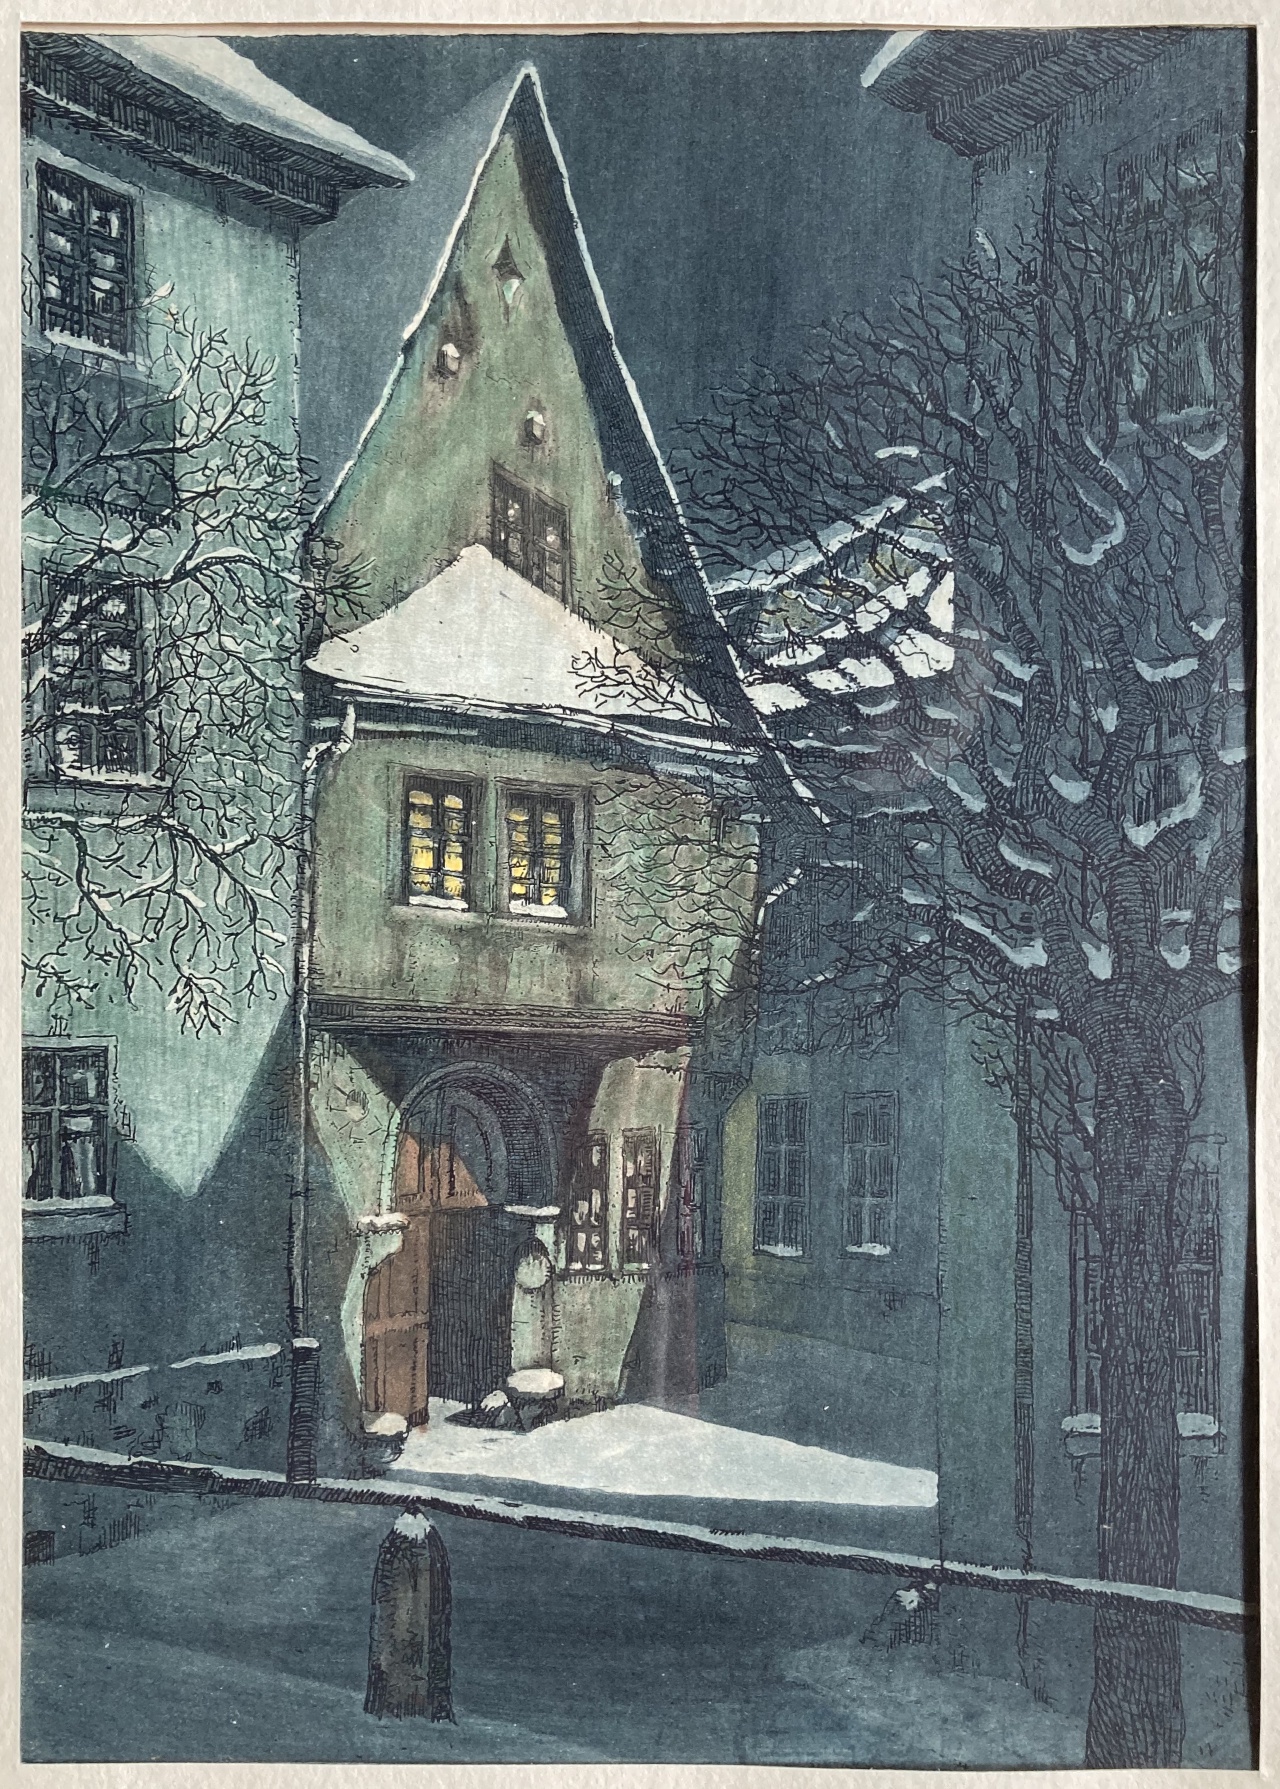 Siedelhof Jena by Curt Mücke (1885-1940)